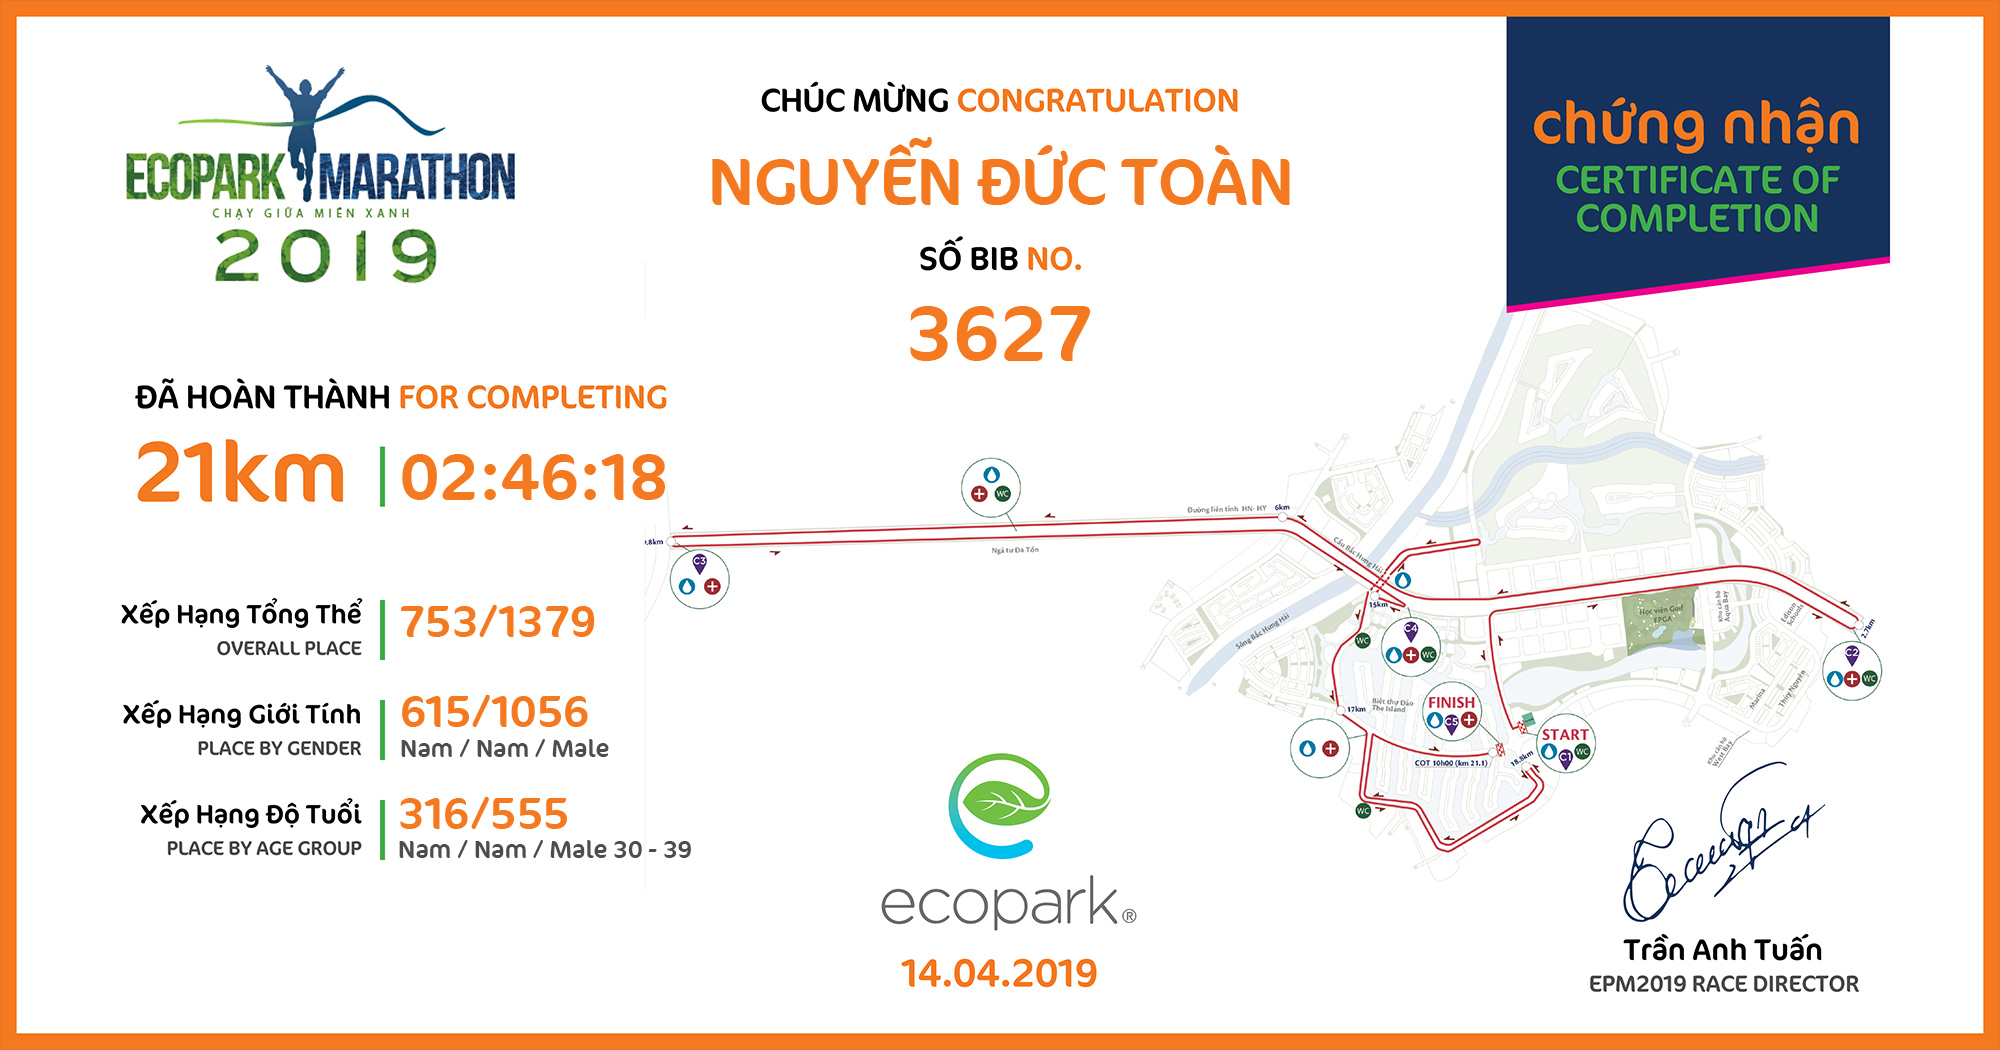 3627 - Nguyễn Đức Toàn